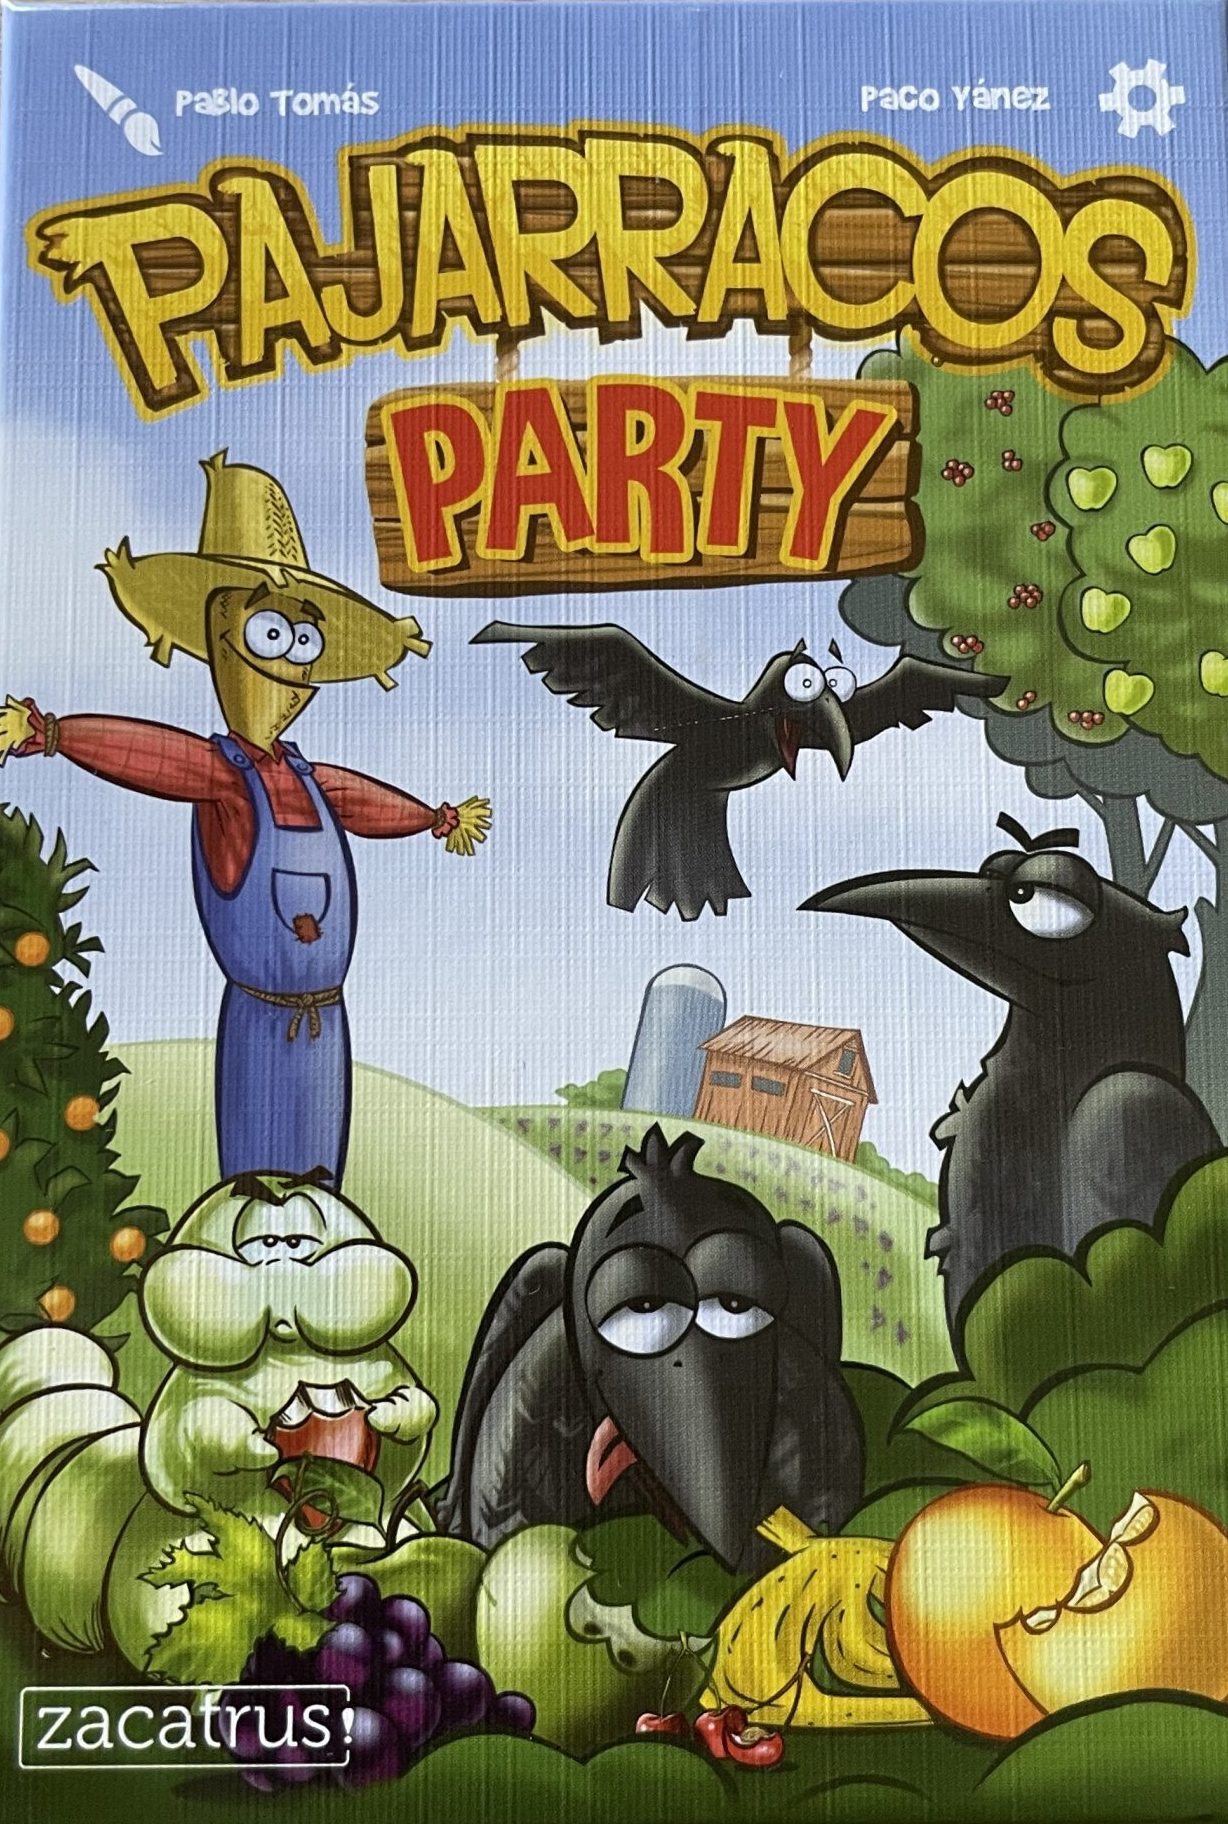 Pajarracos party